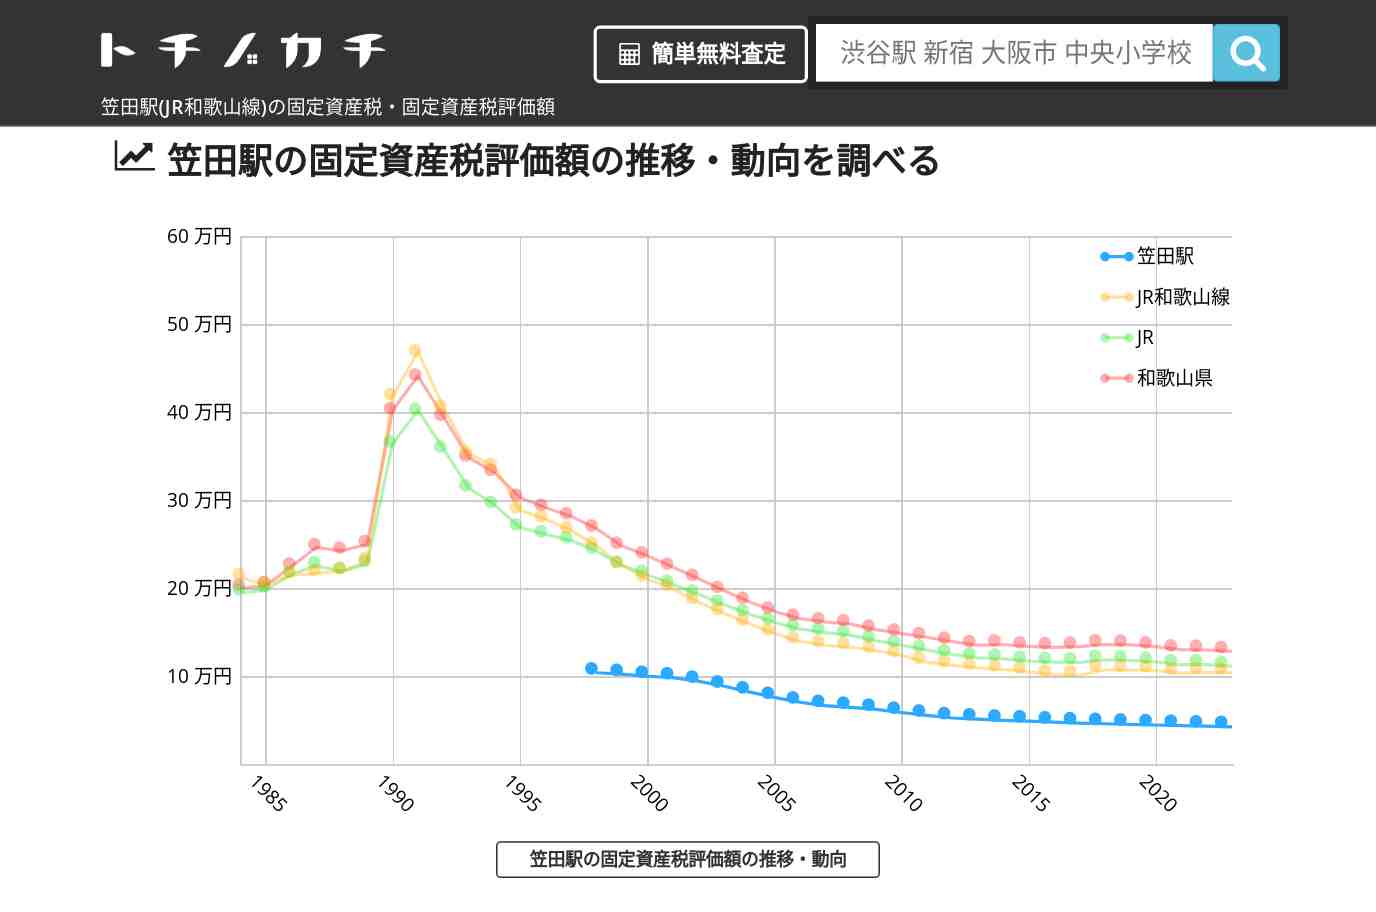 笠田駅(JR和歌山線)の固定資産税・固定資産税評価額 | トチノカチ